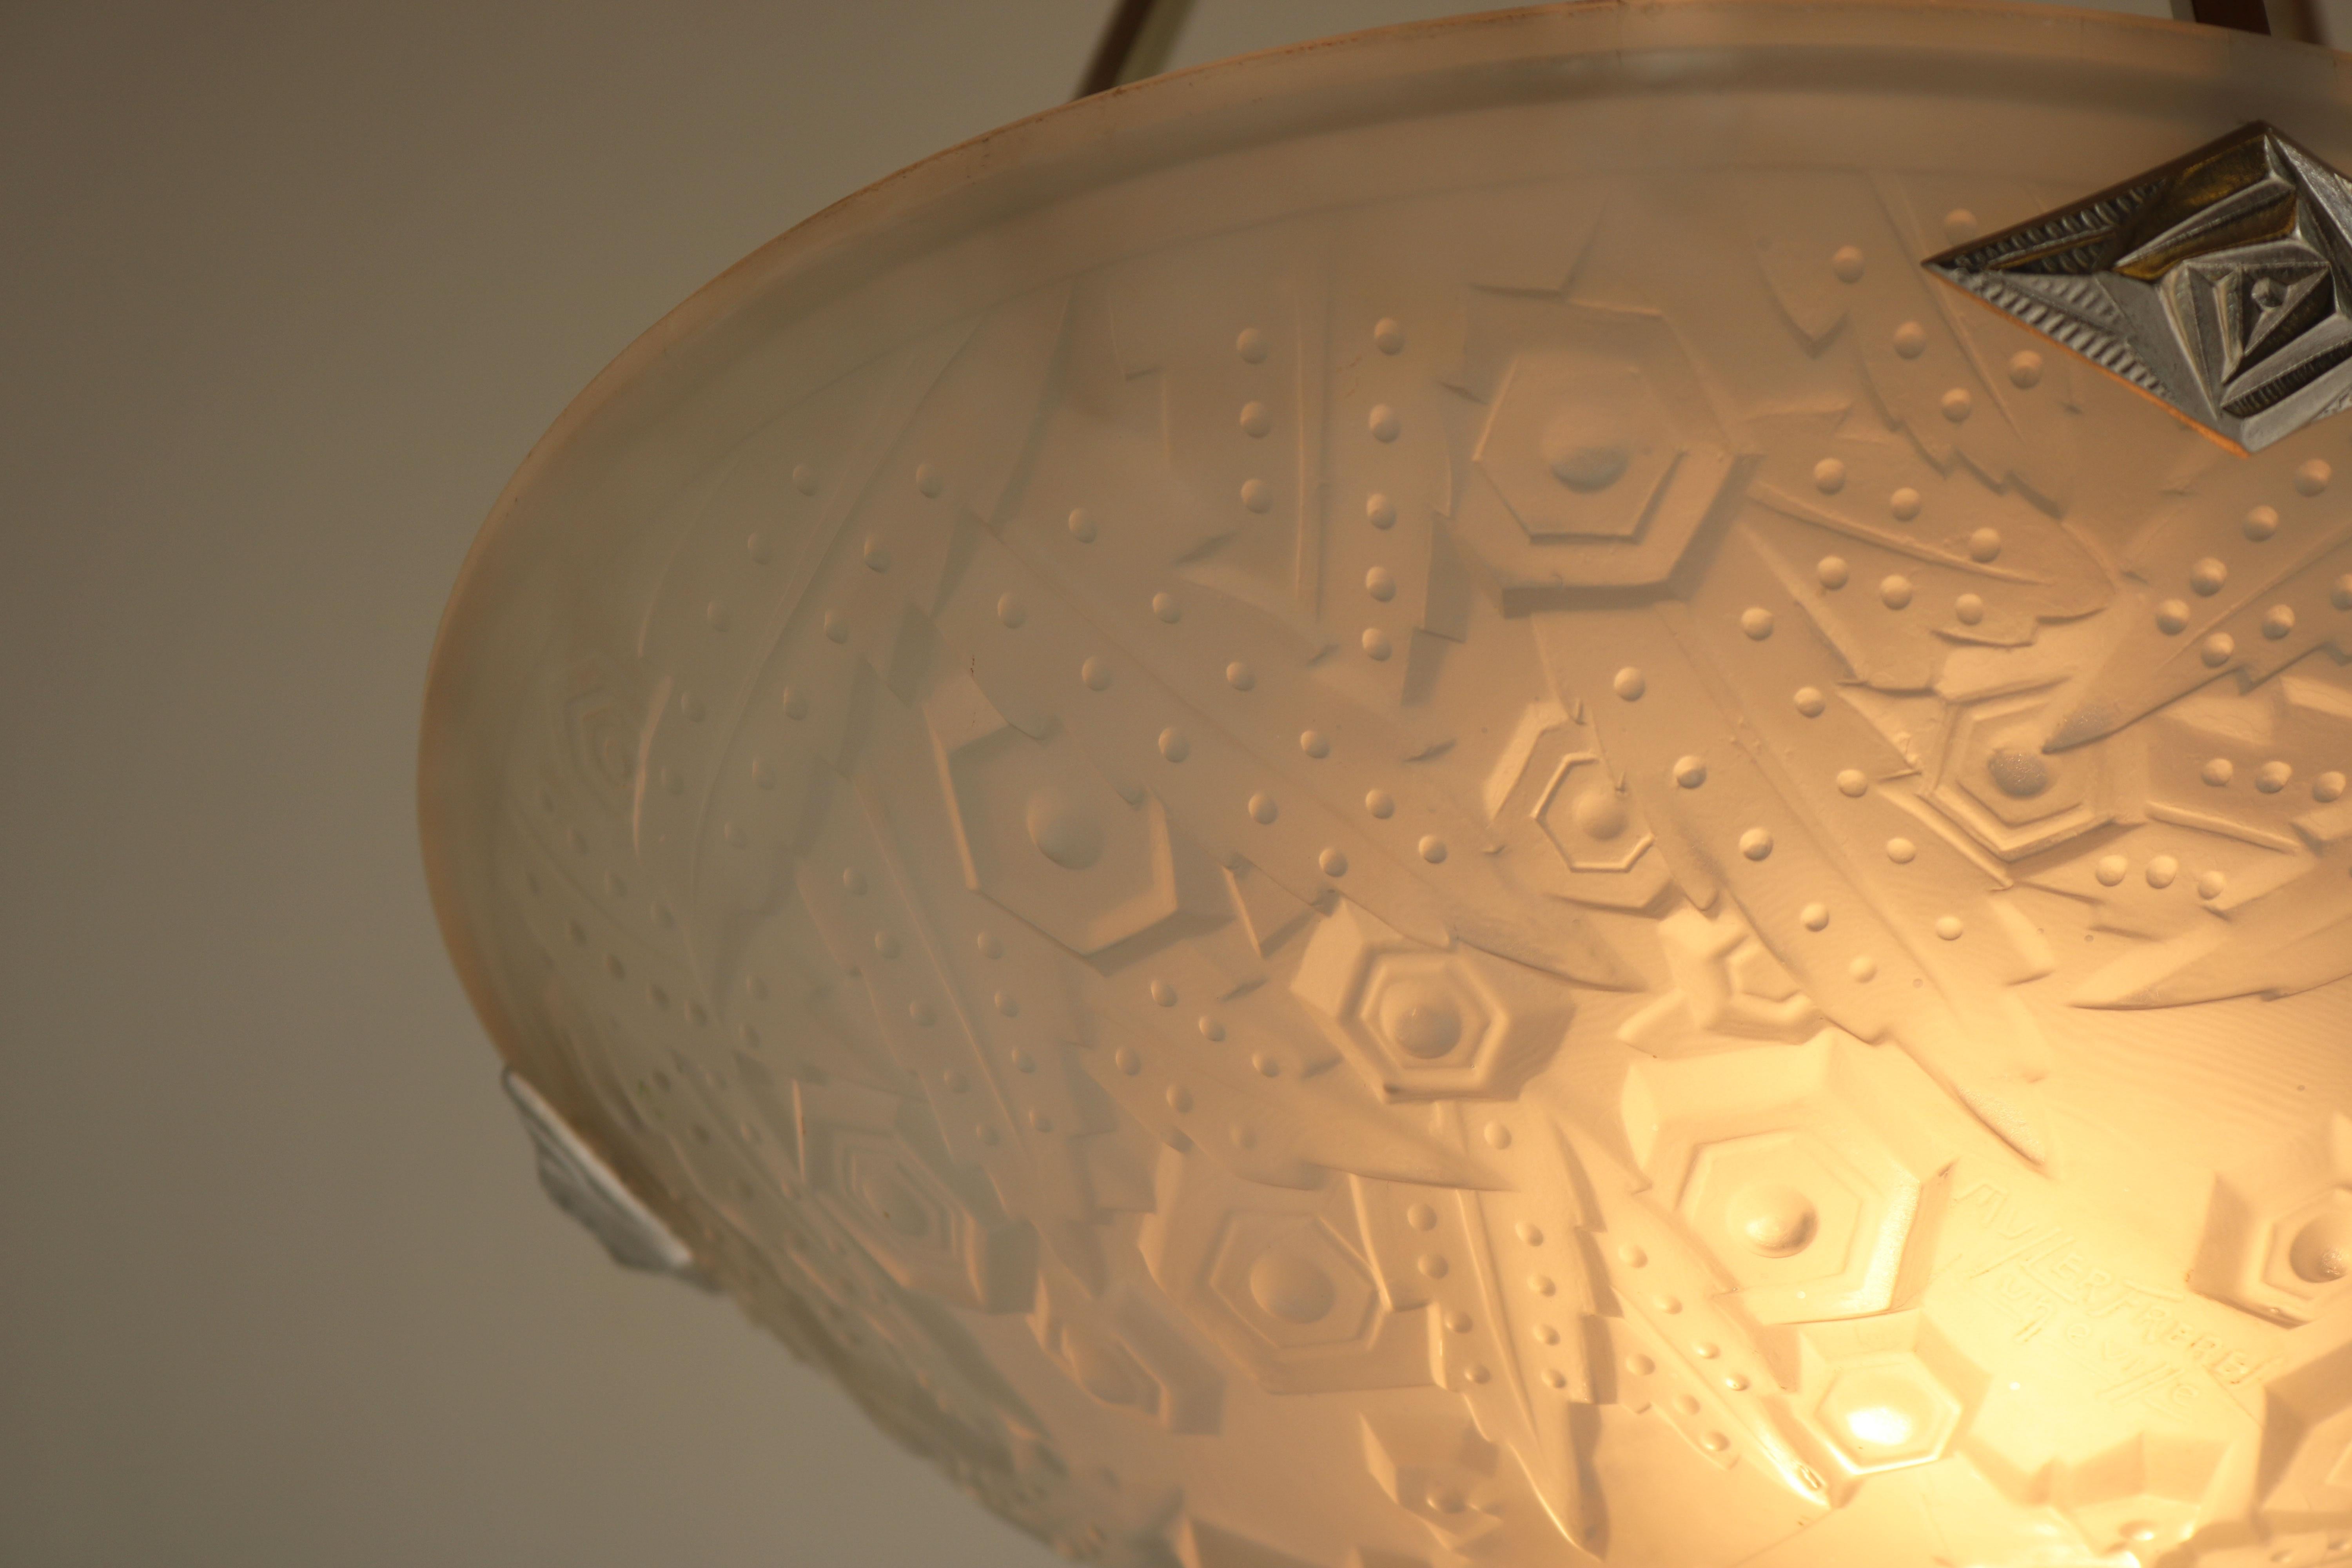 Wunderschön und zeitlos! Diese französische Art-Déco-Hängeleuchte von Muller Frères Luneville 1930.
Wunderschöner weißer Milchglasschirm mit erstaunlichen geometrischen Art-Déco-Motiven. 
Exquisiter Rahmen in Silber mit Art-Déco-Verzierungen.